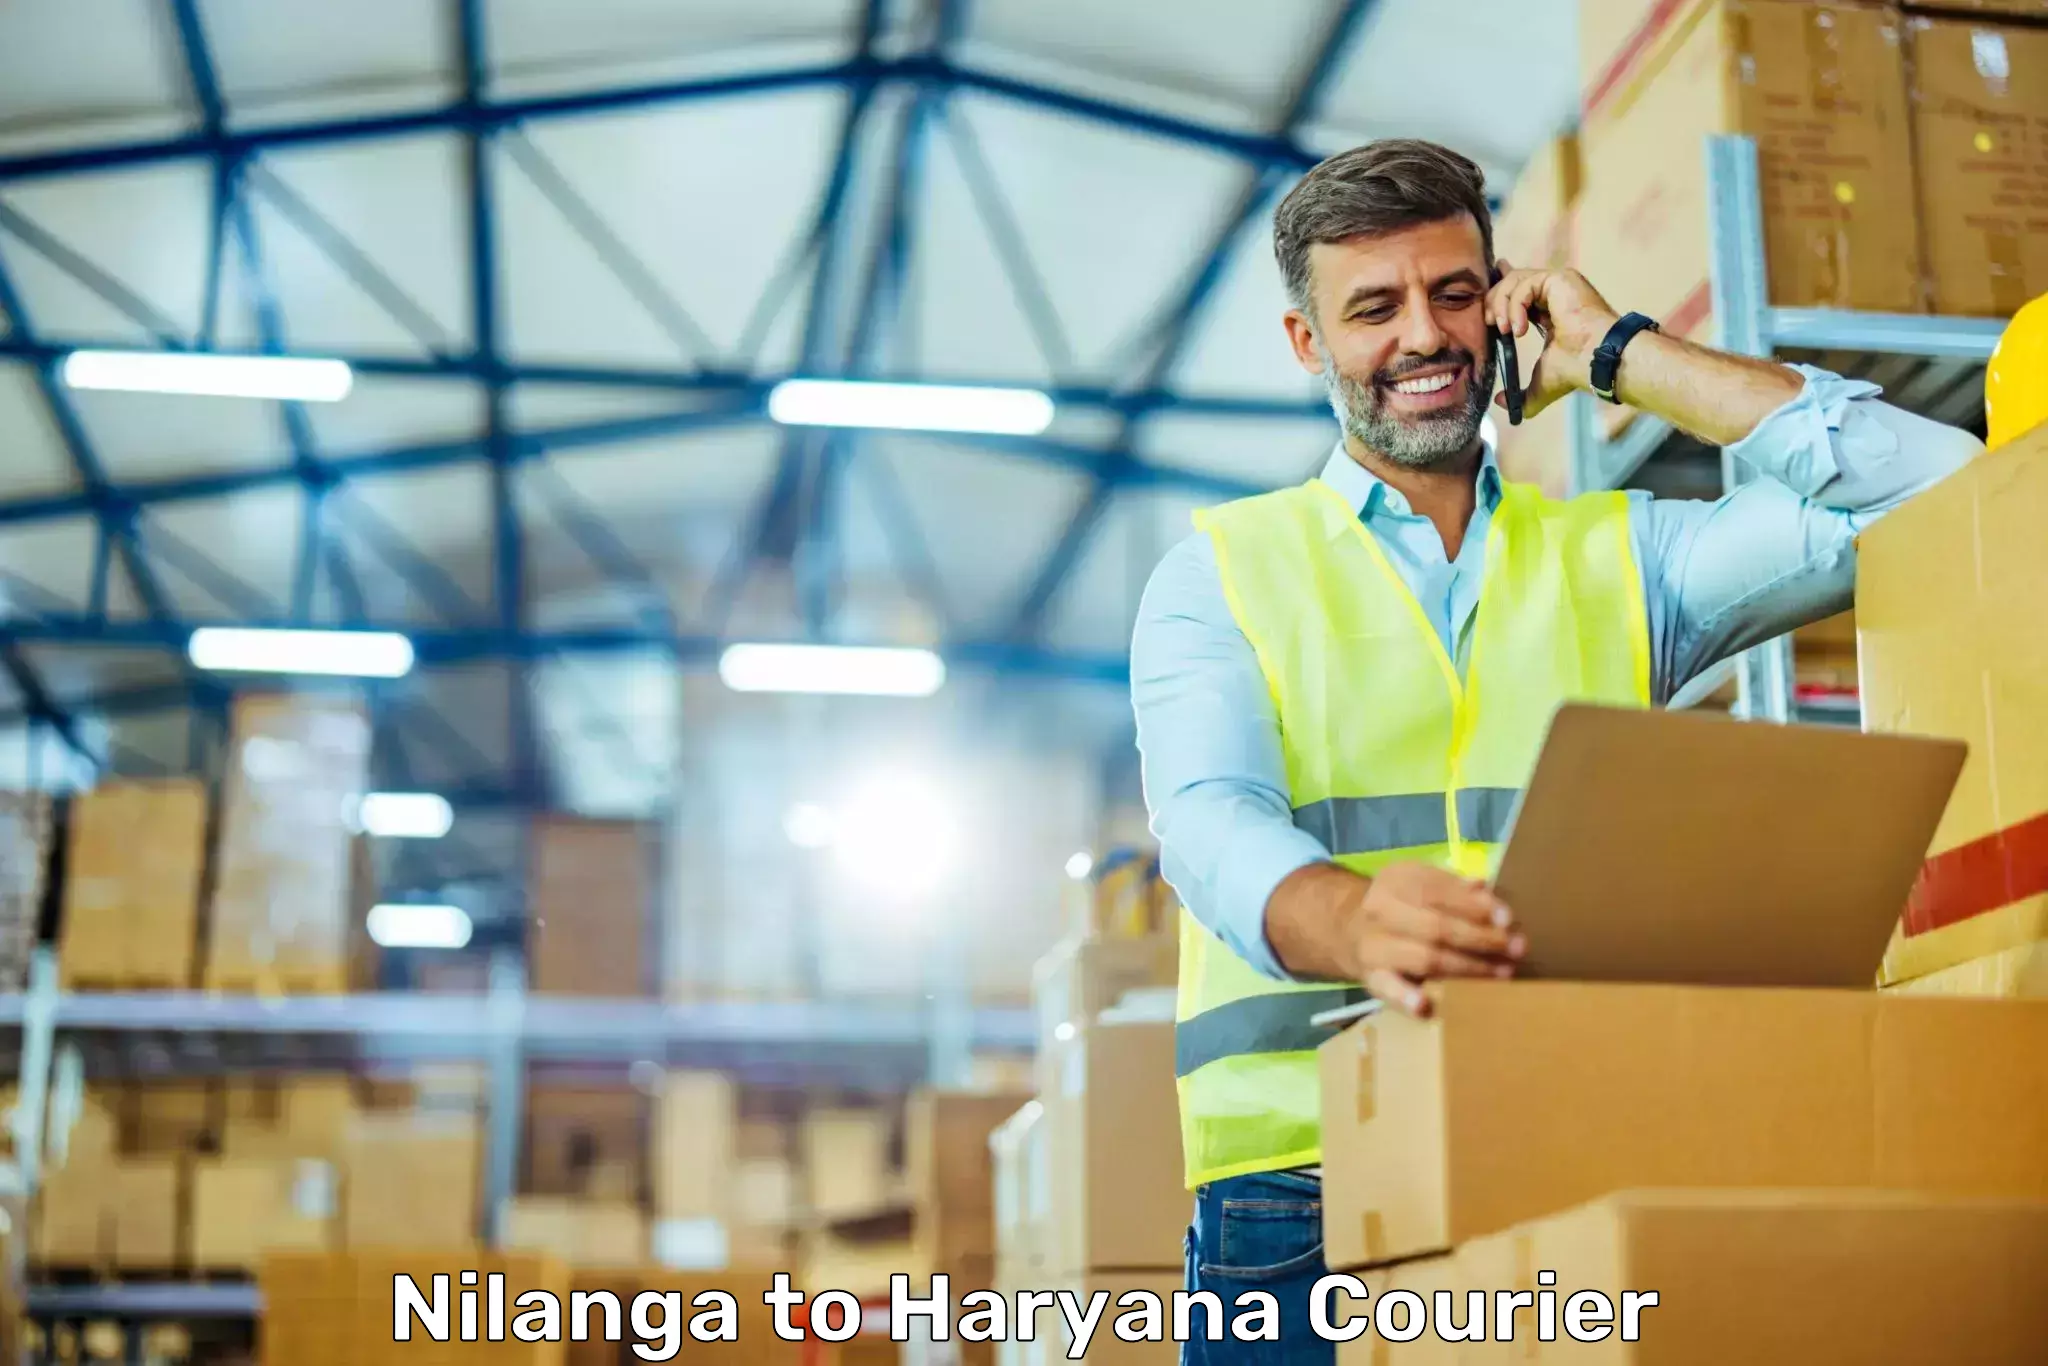 Business shipping needs Nilanga to NCR Haryana